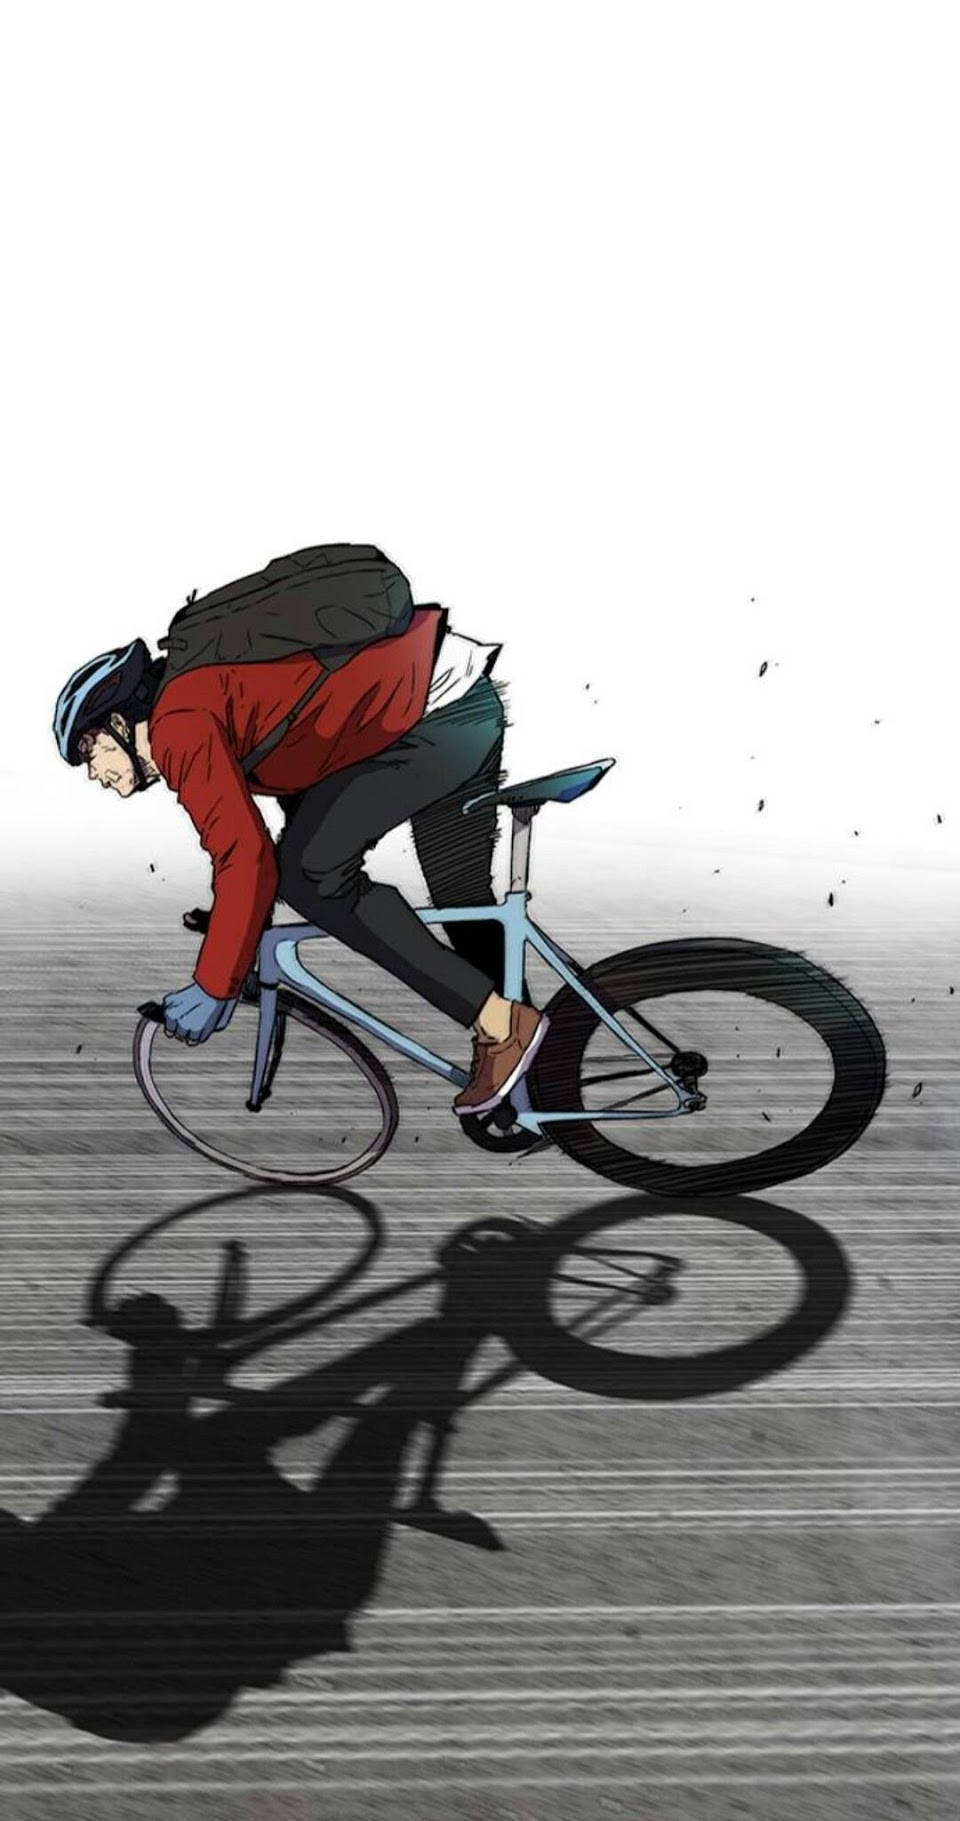 Jay Jo Riding His Bike